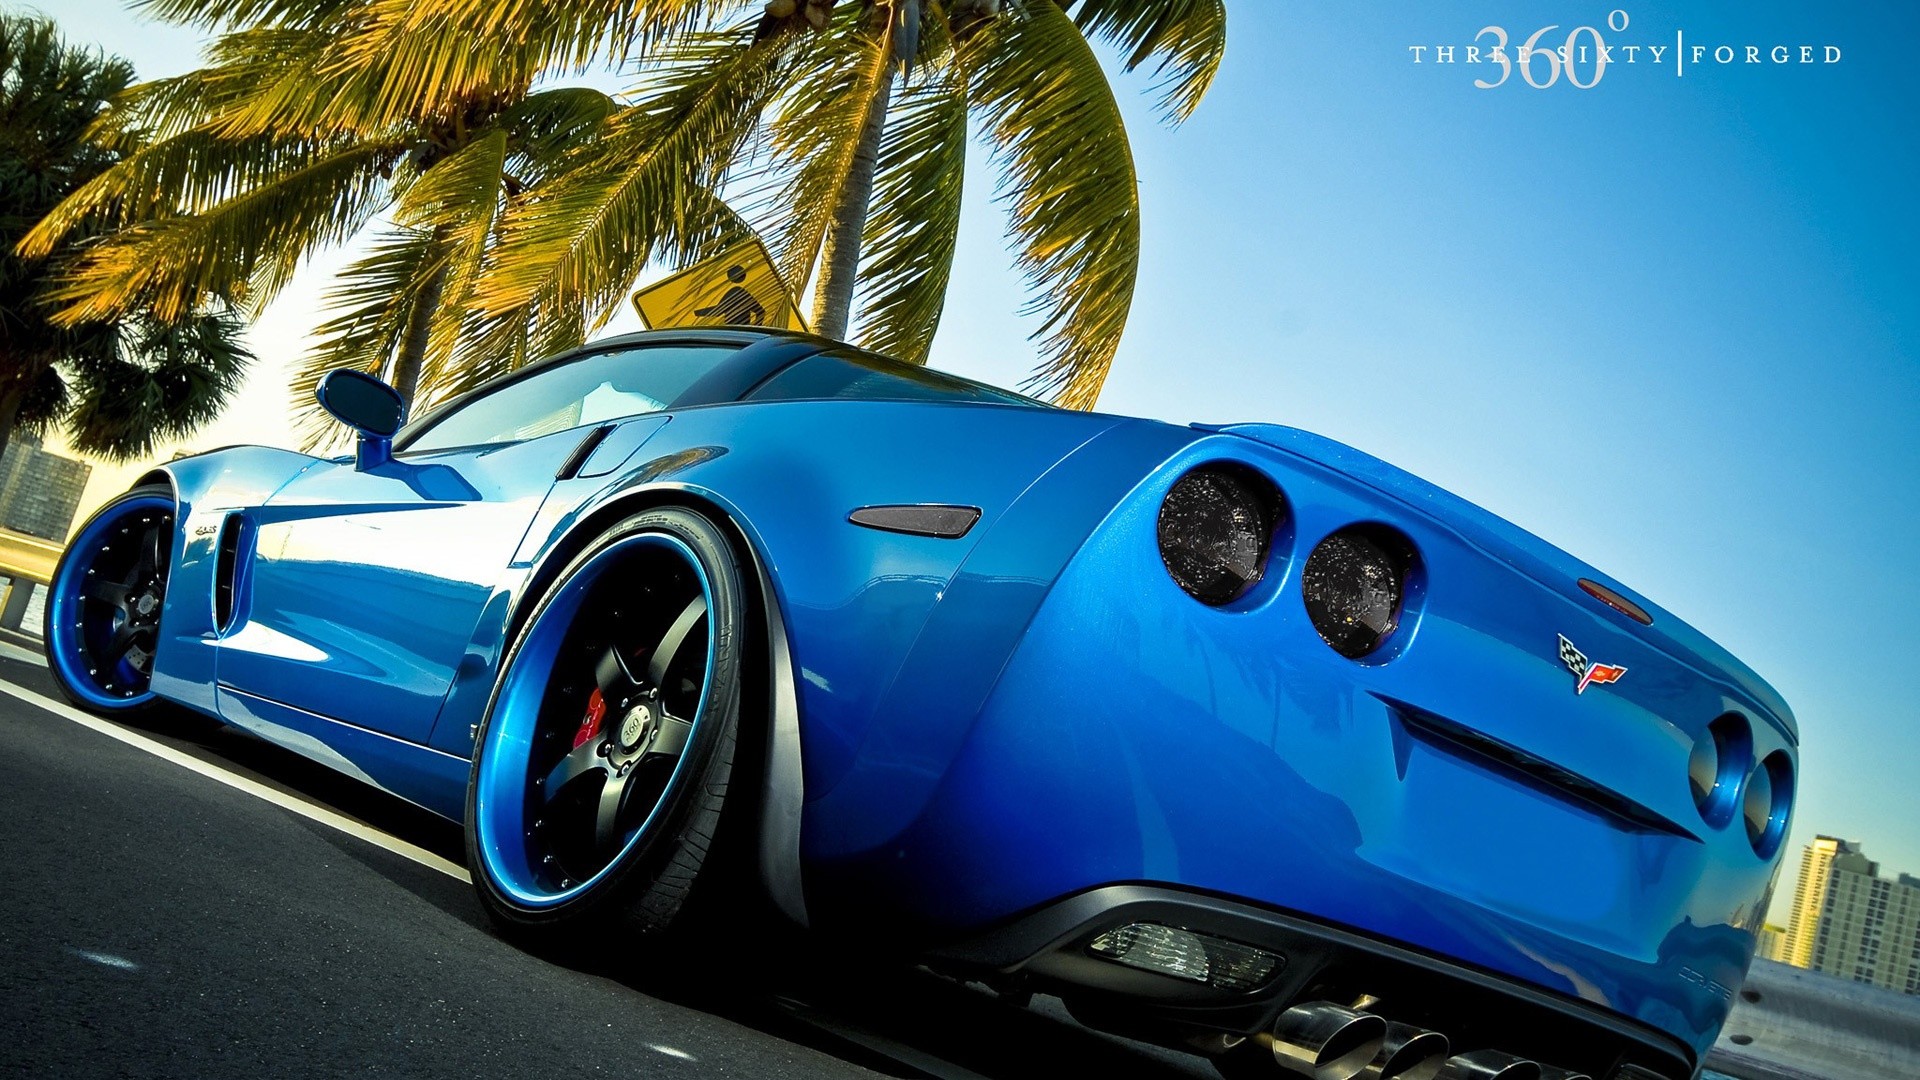 Blue Cars Wallpaper Wheels Corvette